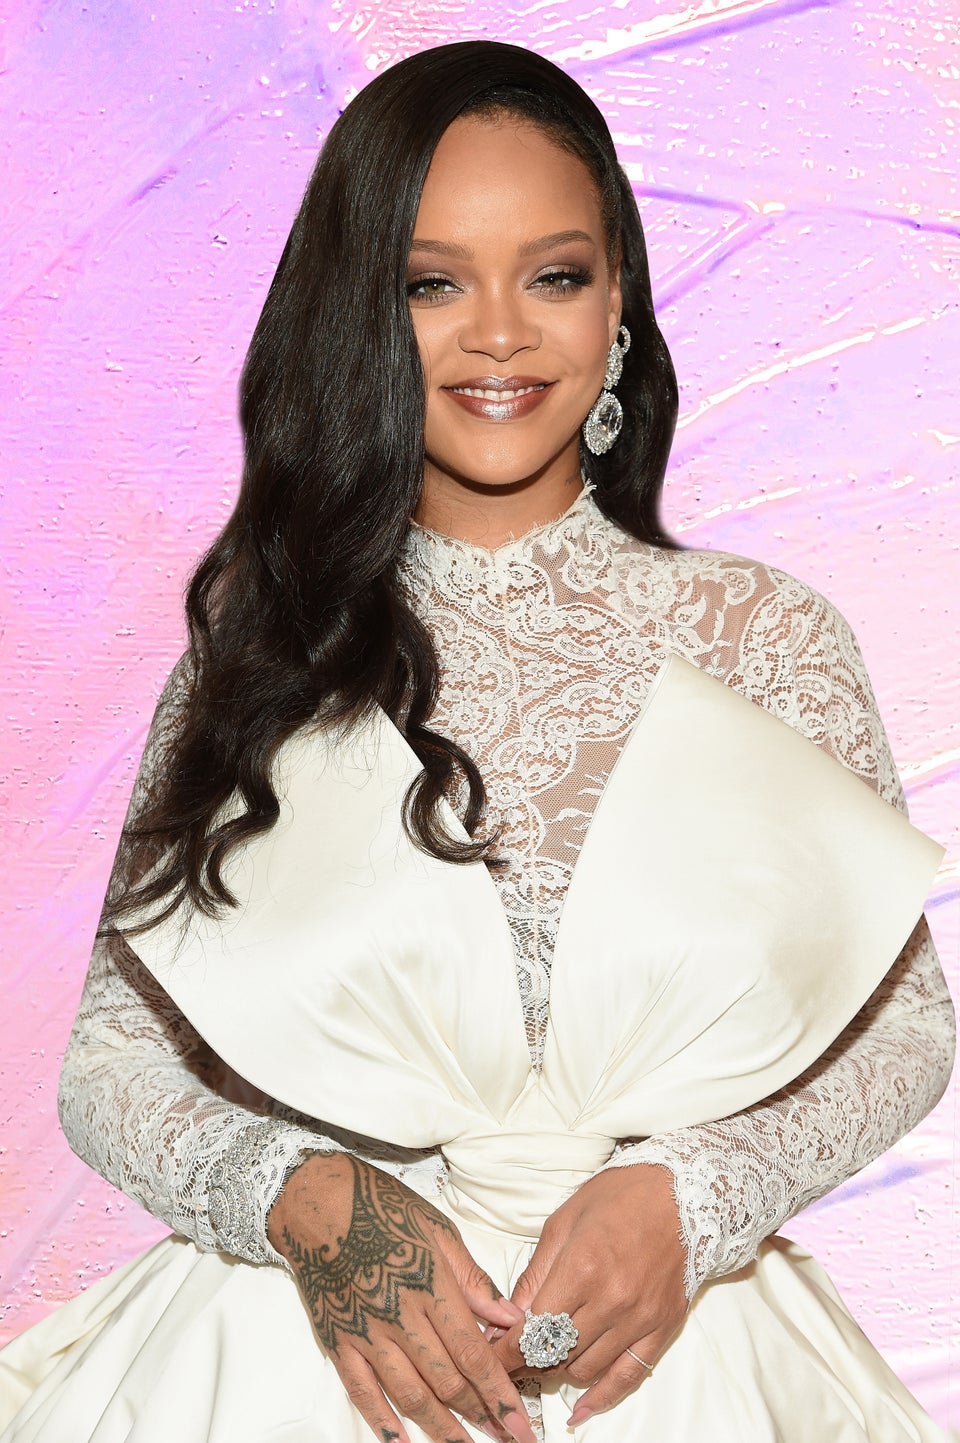 A ‘Smitten’ Rihanna Is Still Going Strong With Her Saudi Billionaire Boyfriend